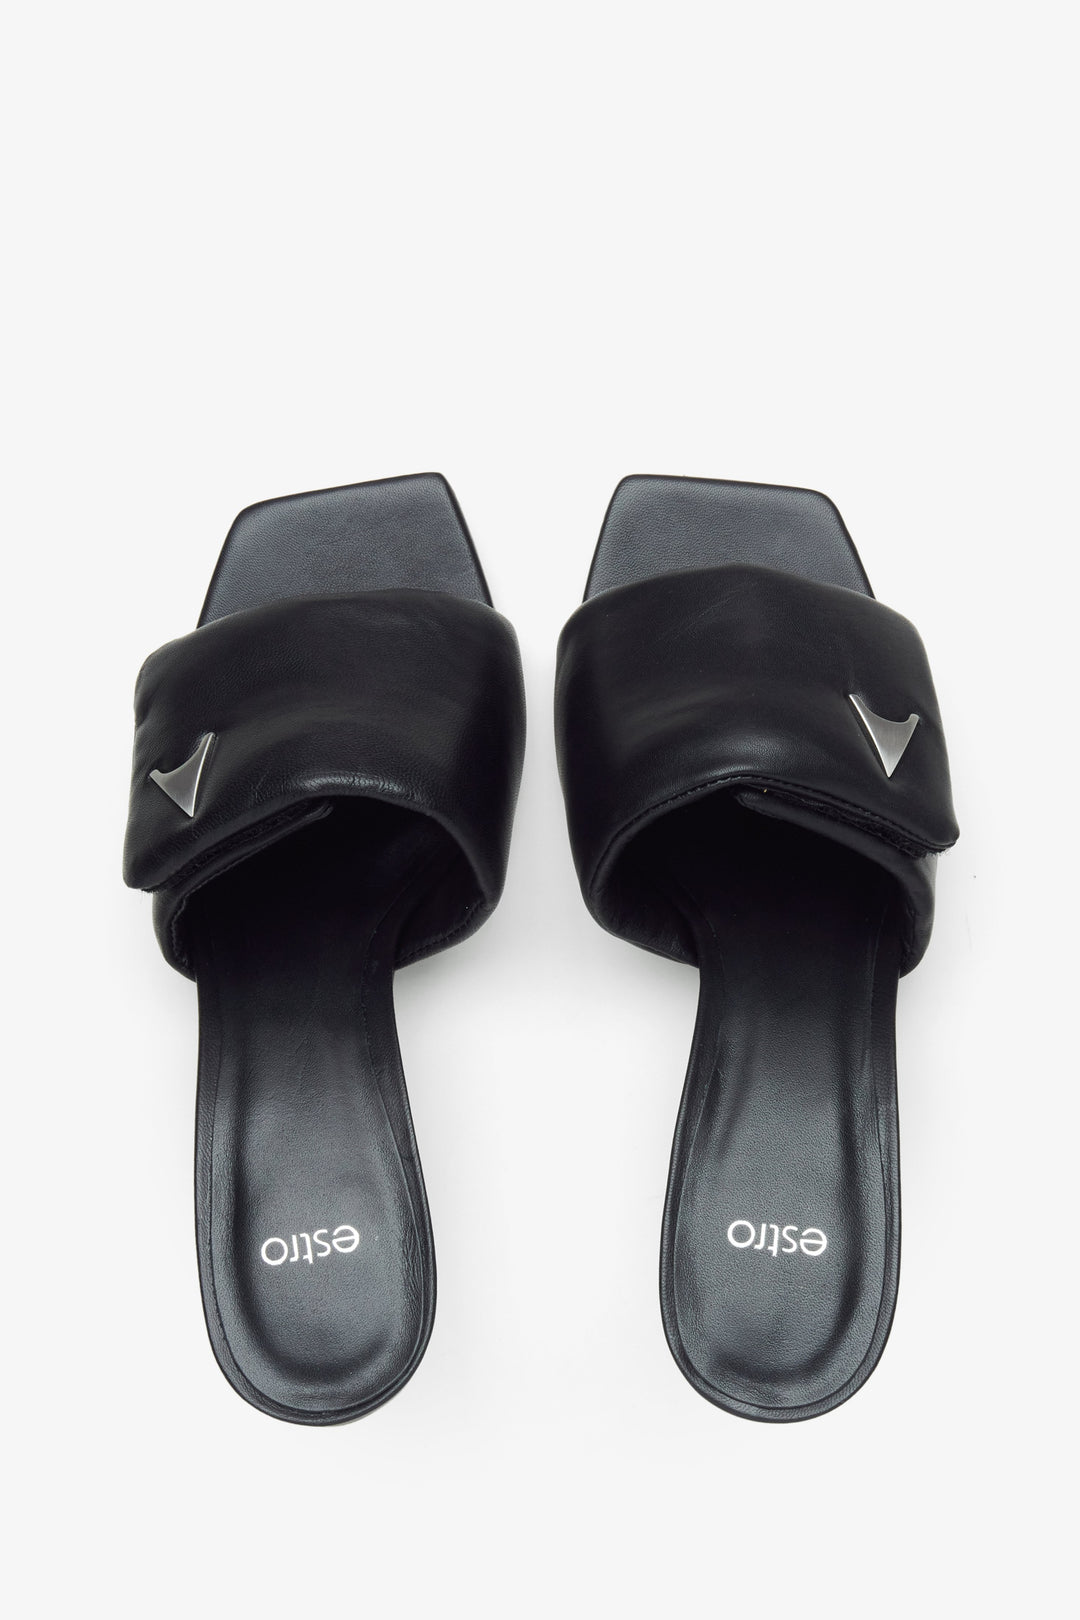 Women's Funnel Heel Slide Sandals in Black, Estro Brand